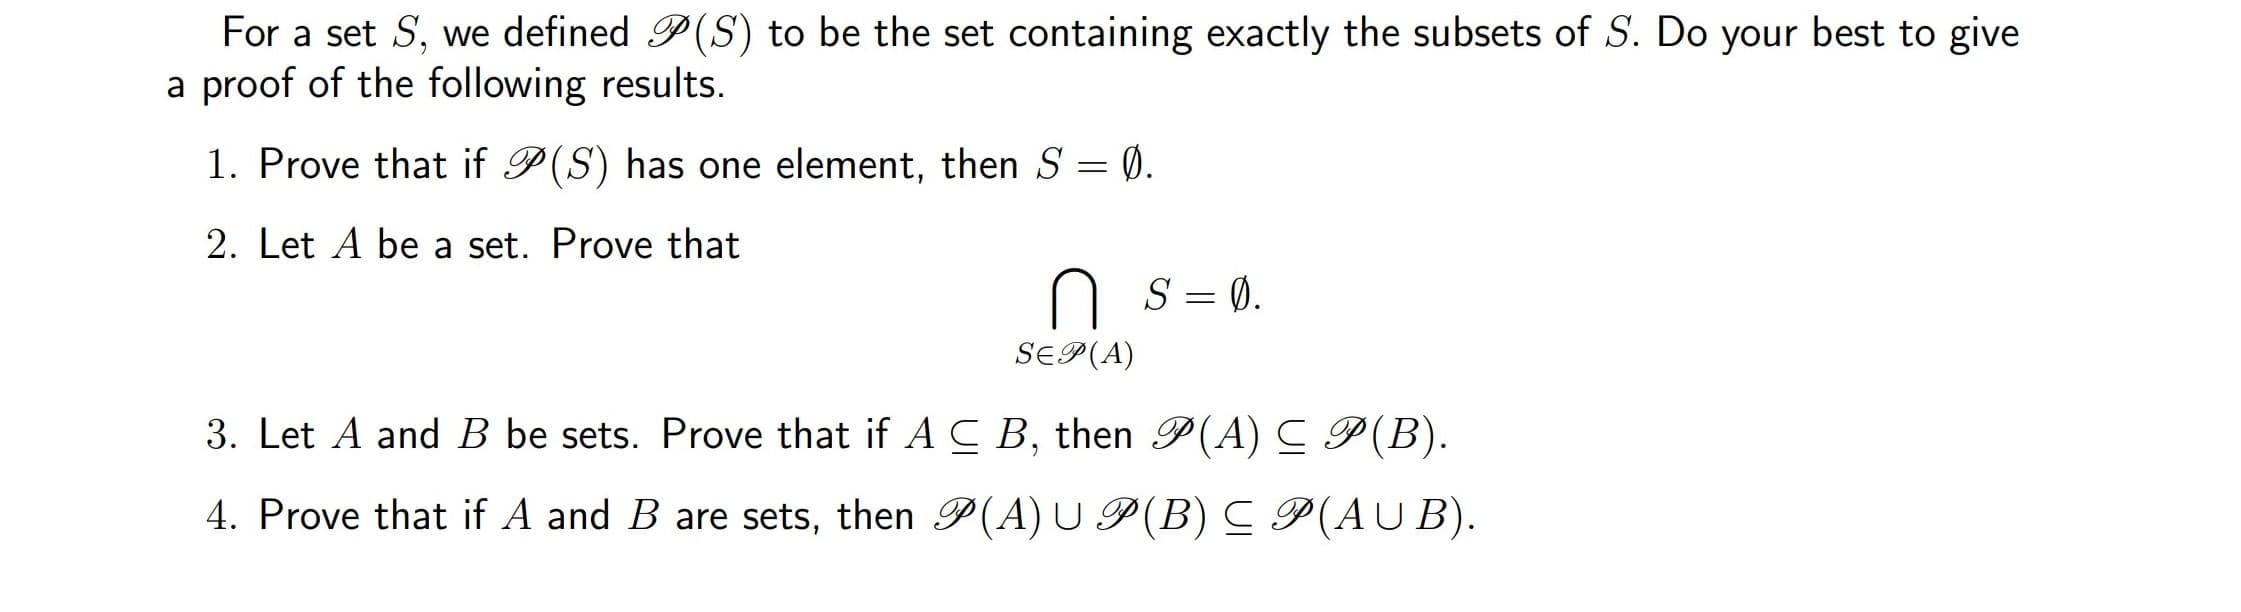 Let A be a set. Prove that
S = 0.
SEP(A)
